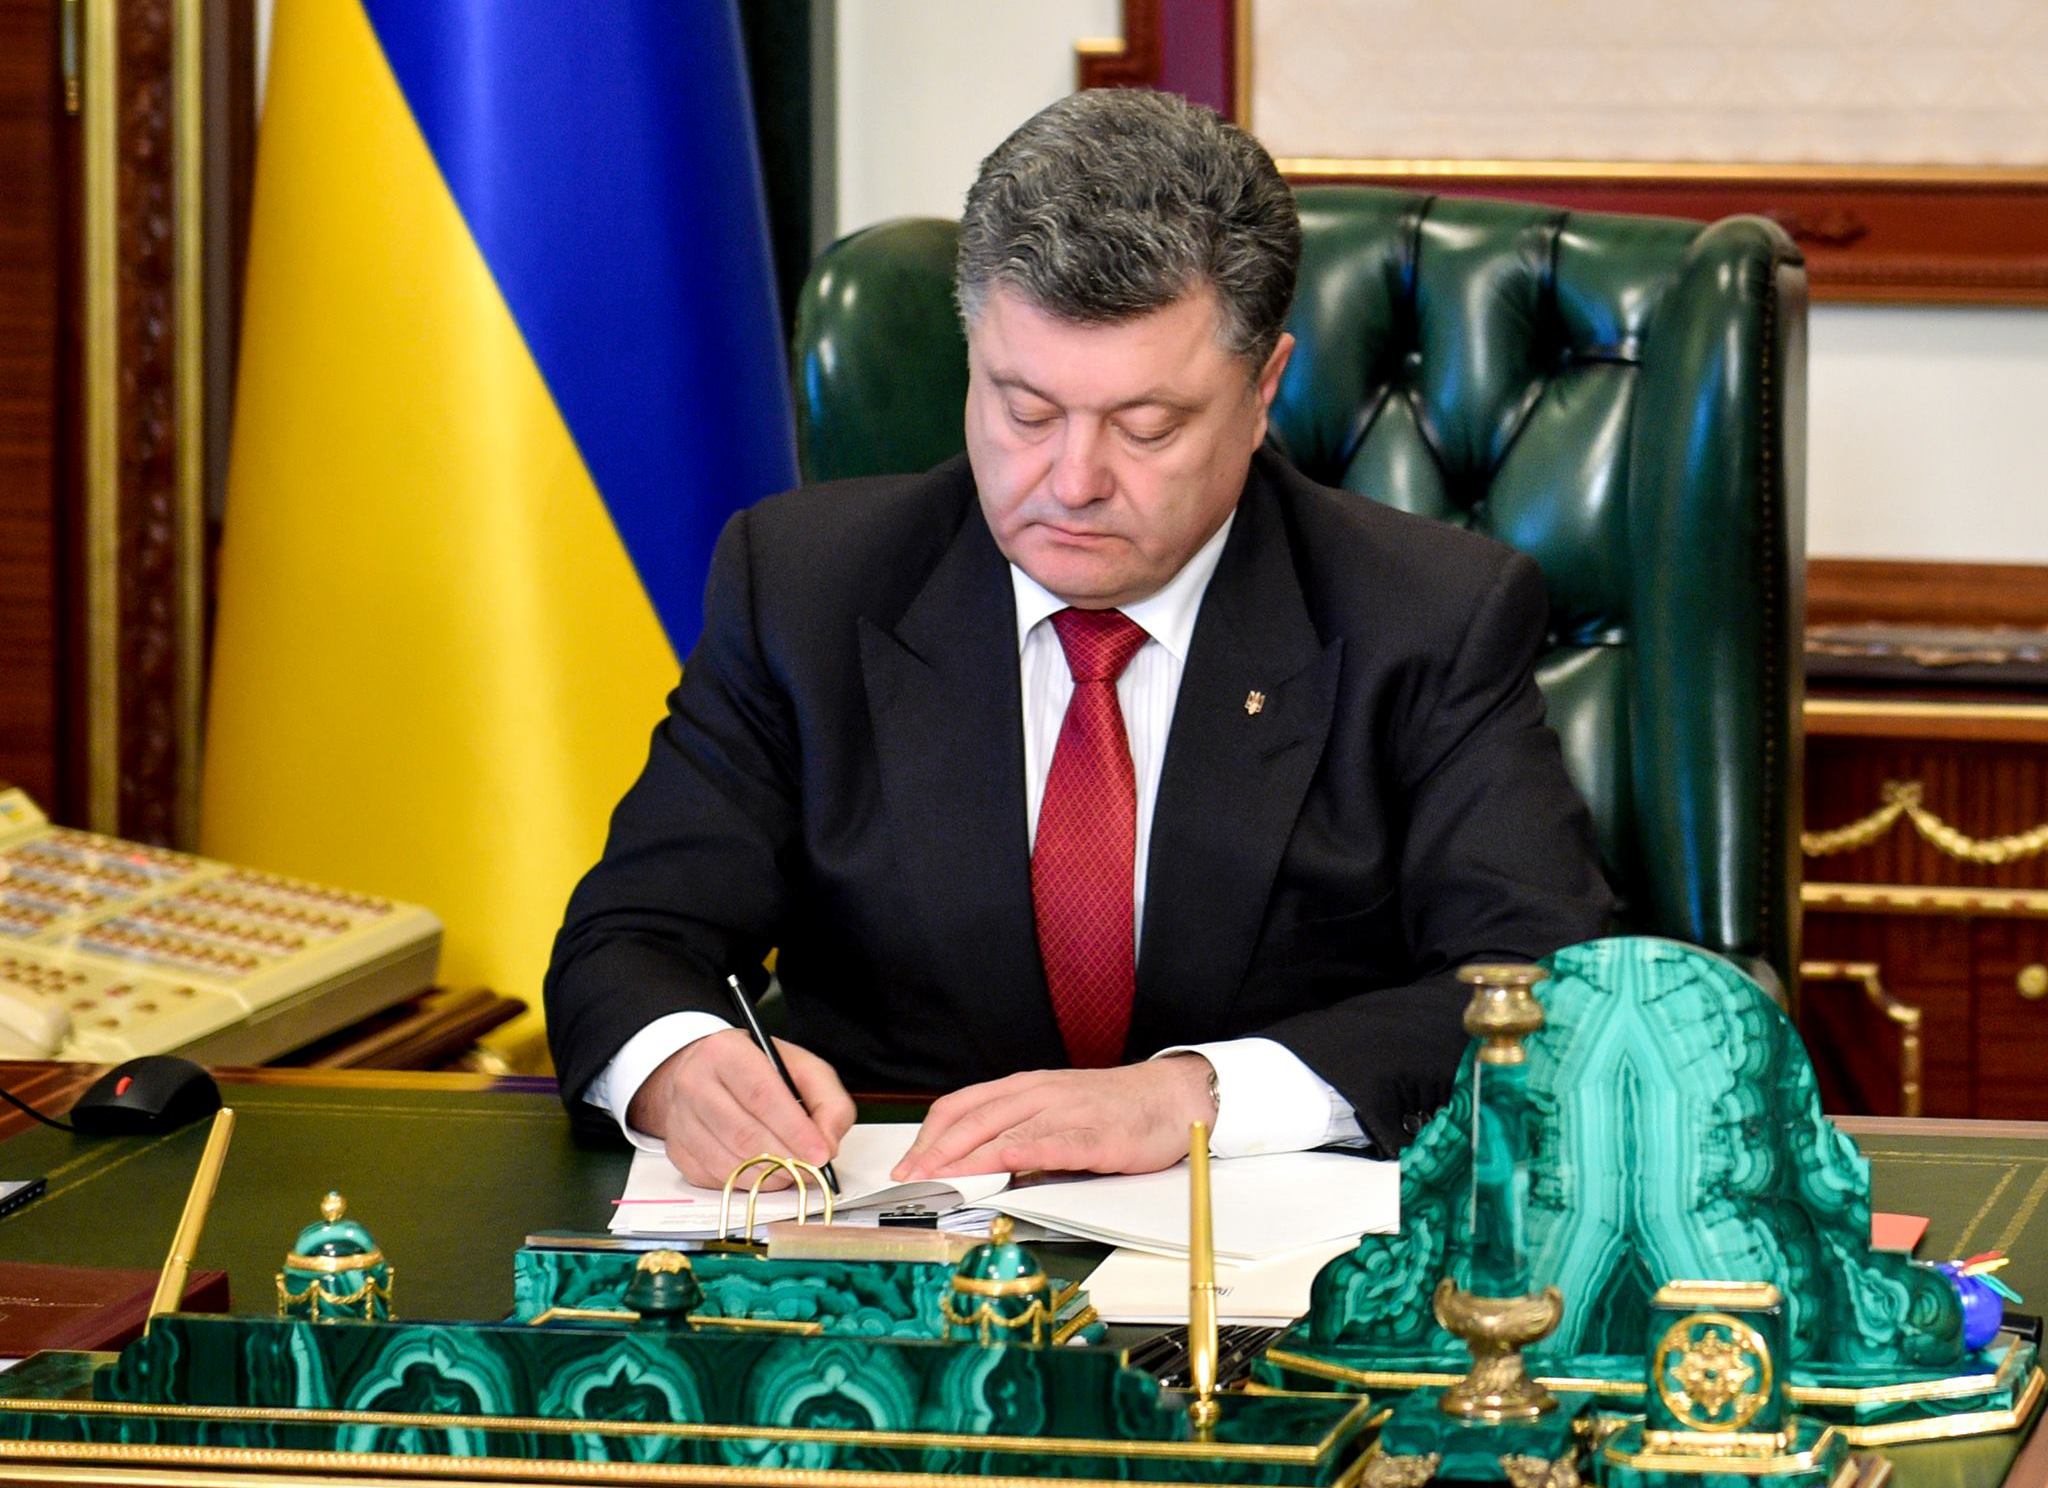 Порошенко подписал закон об особом статусе Донбасса. Что дальше?